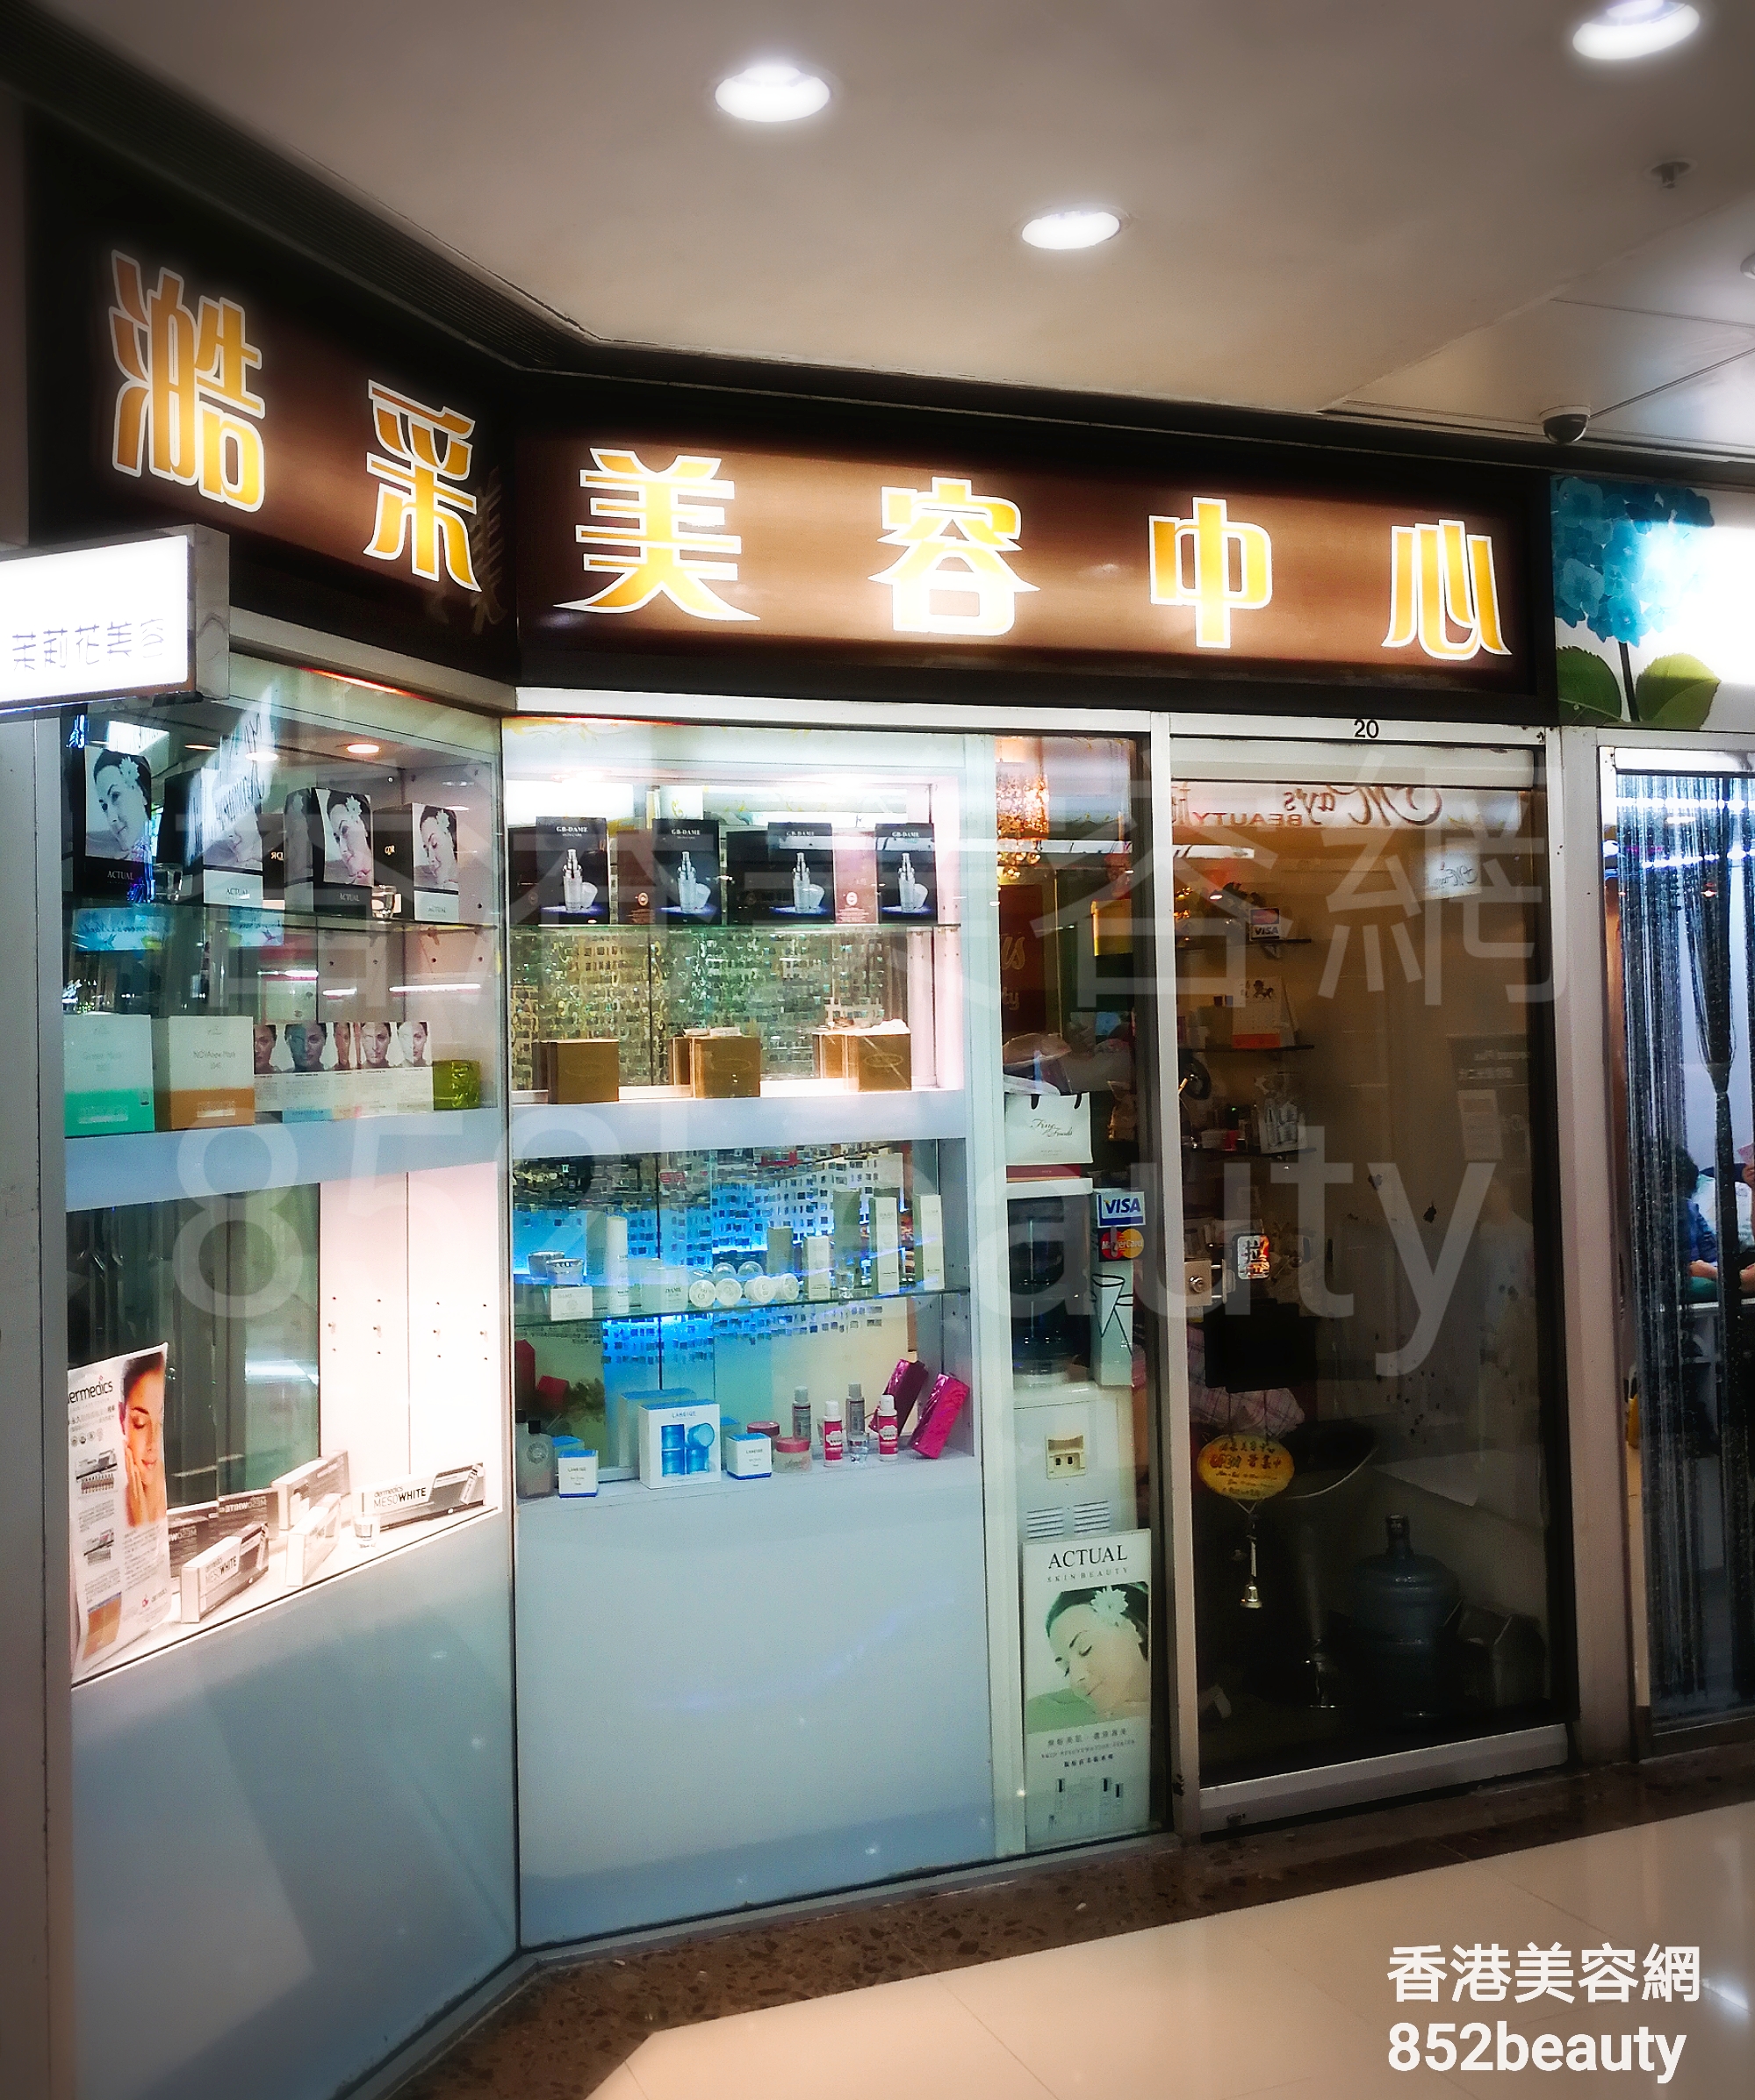 香港美容網 Hong Kong Beauty Salon 美容院 / 美容師: 澔采美容中心